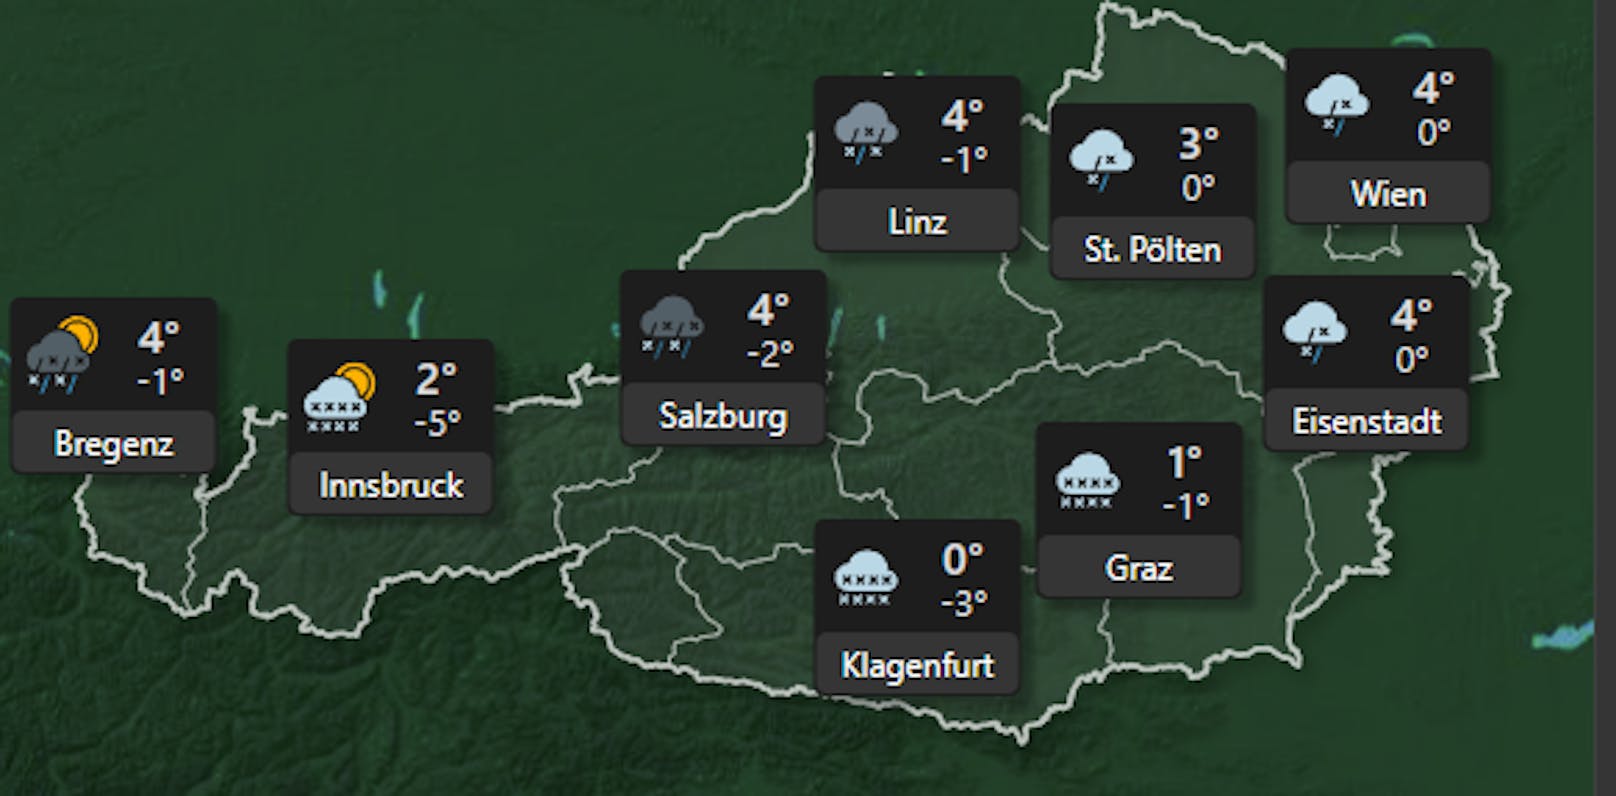 Der Sonntag verläuft landesweit unbeständig und vor allem im zentralen und östlichen Bergland winterlich mit zeitweiligem Schneefall. Anfangs ist im östlichen Flachland auch teils gefrierender Regen möglich. Die Sonne zeigt sich höchstens zwischendurch, am ehesten lockert es in Vorarlberg und Nordtirol auf.